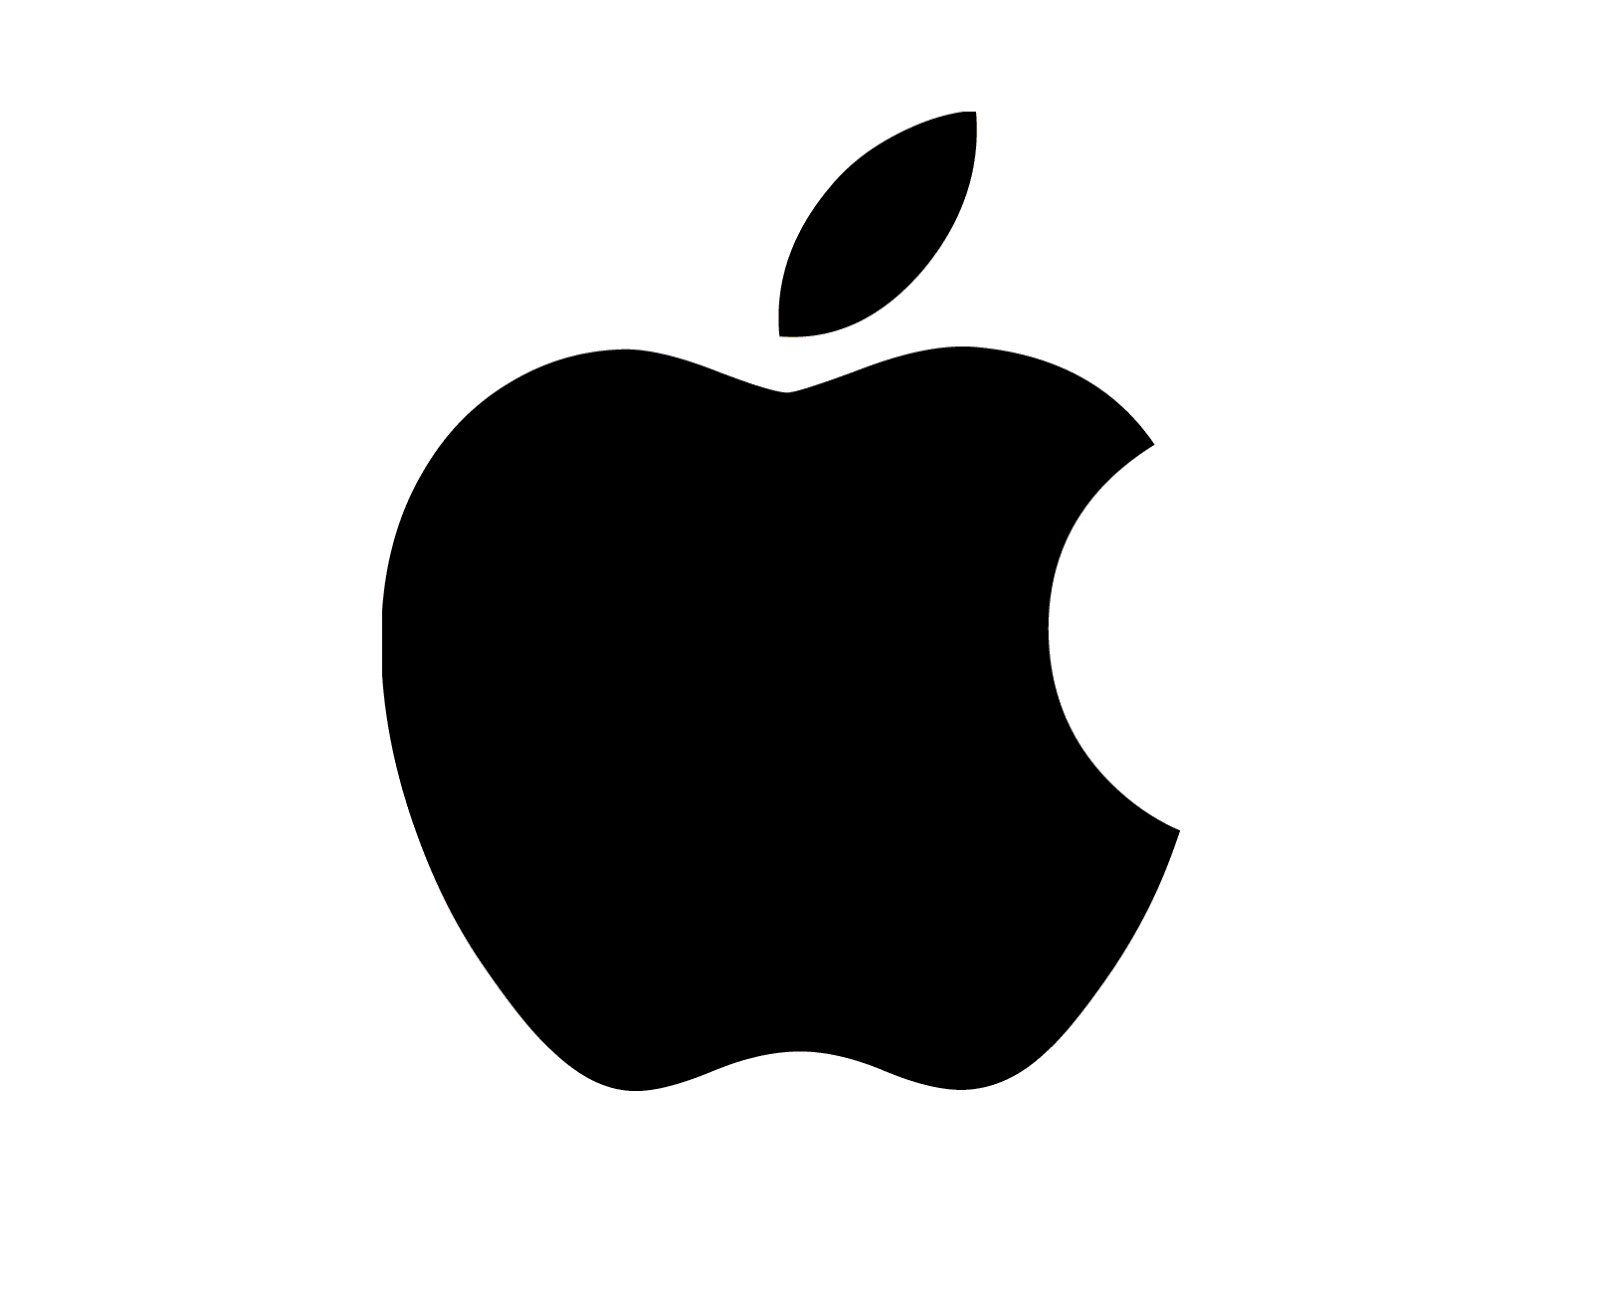 Official iOS Logo - Official apple Logos